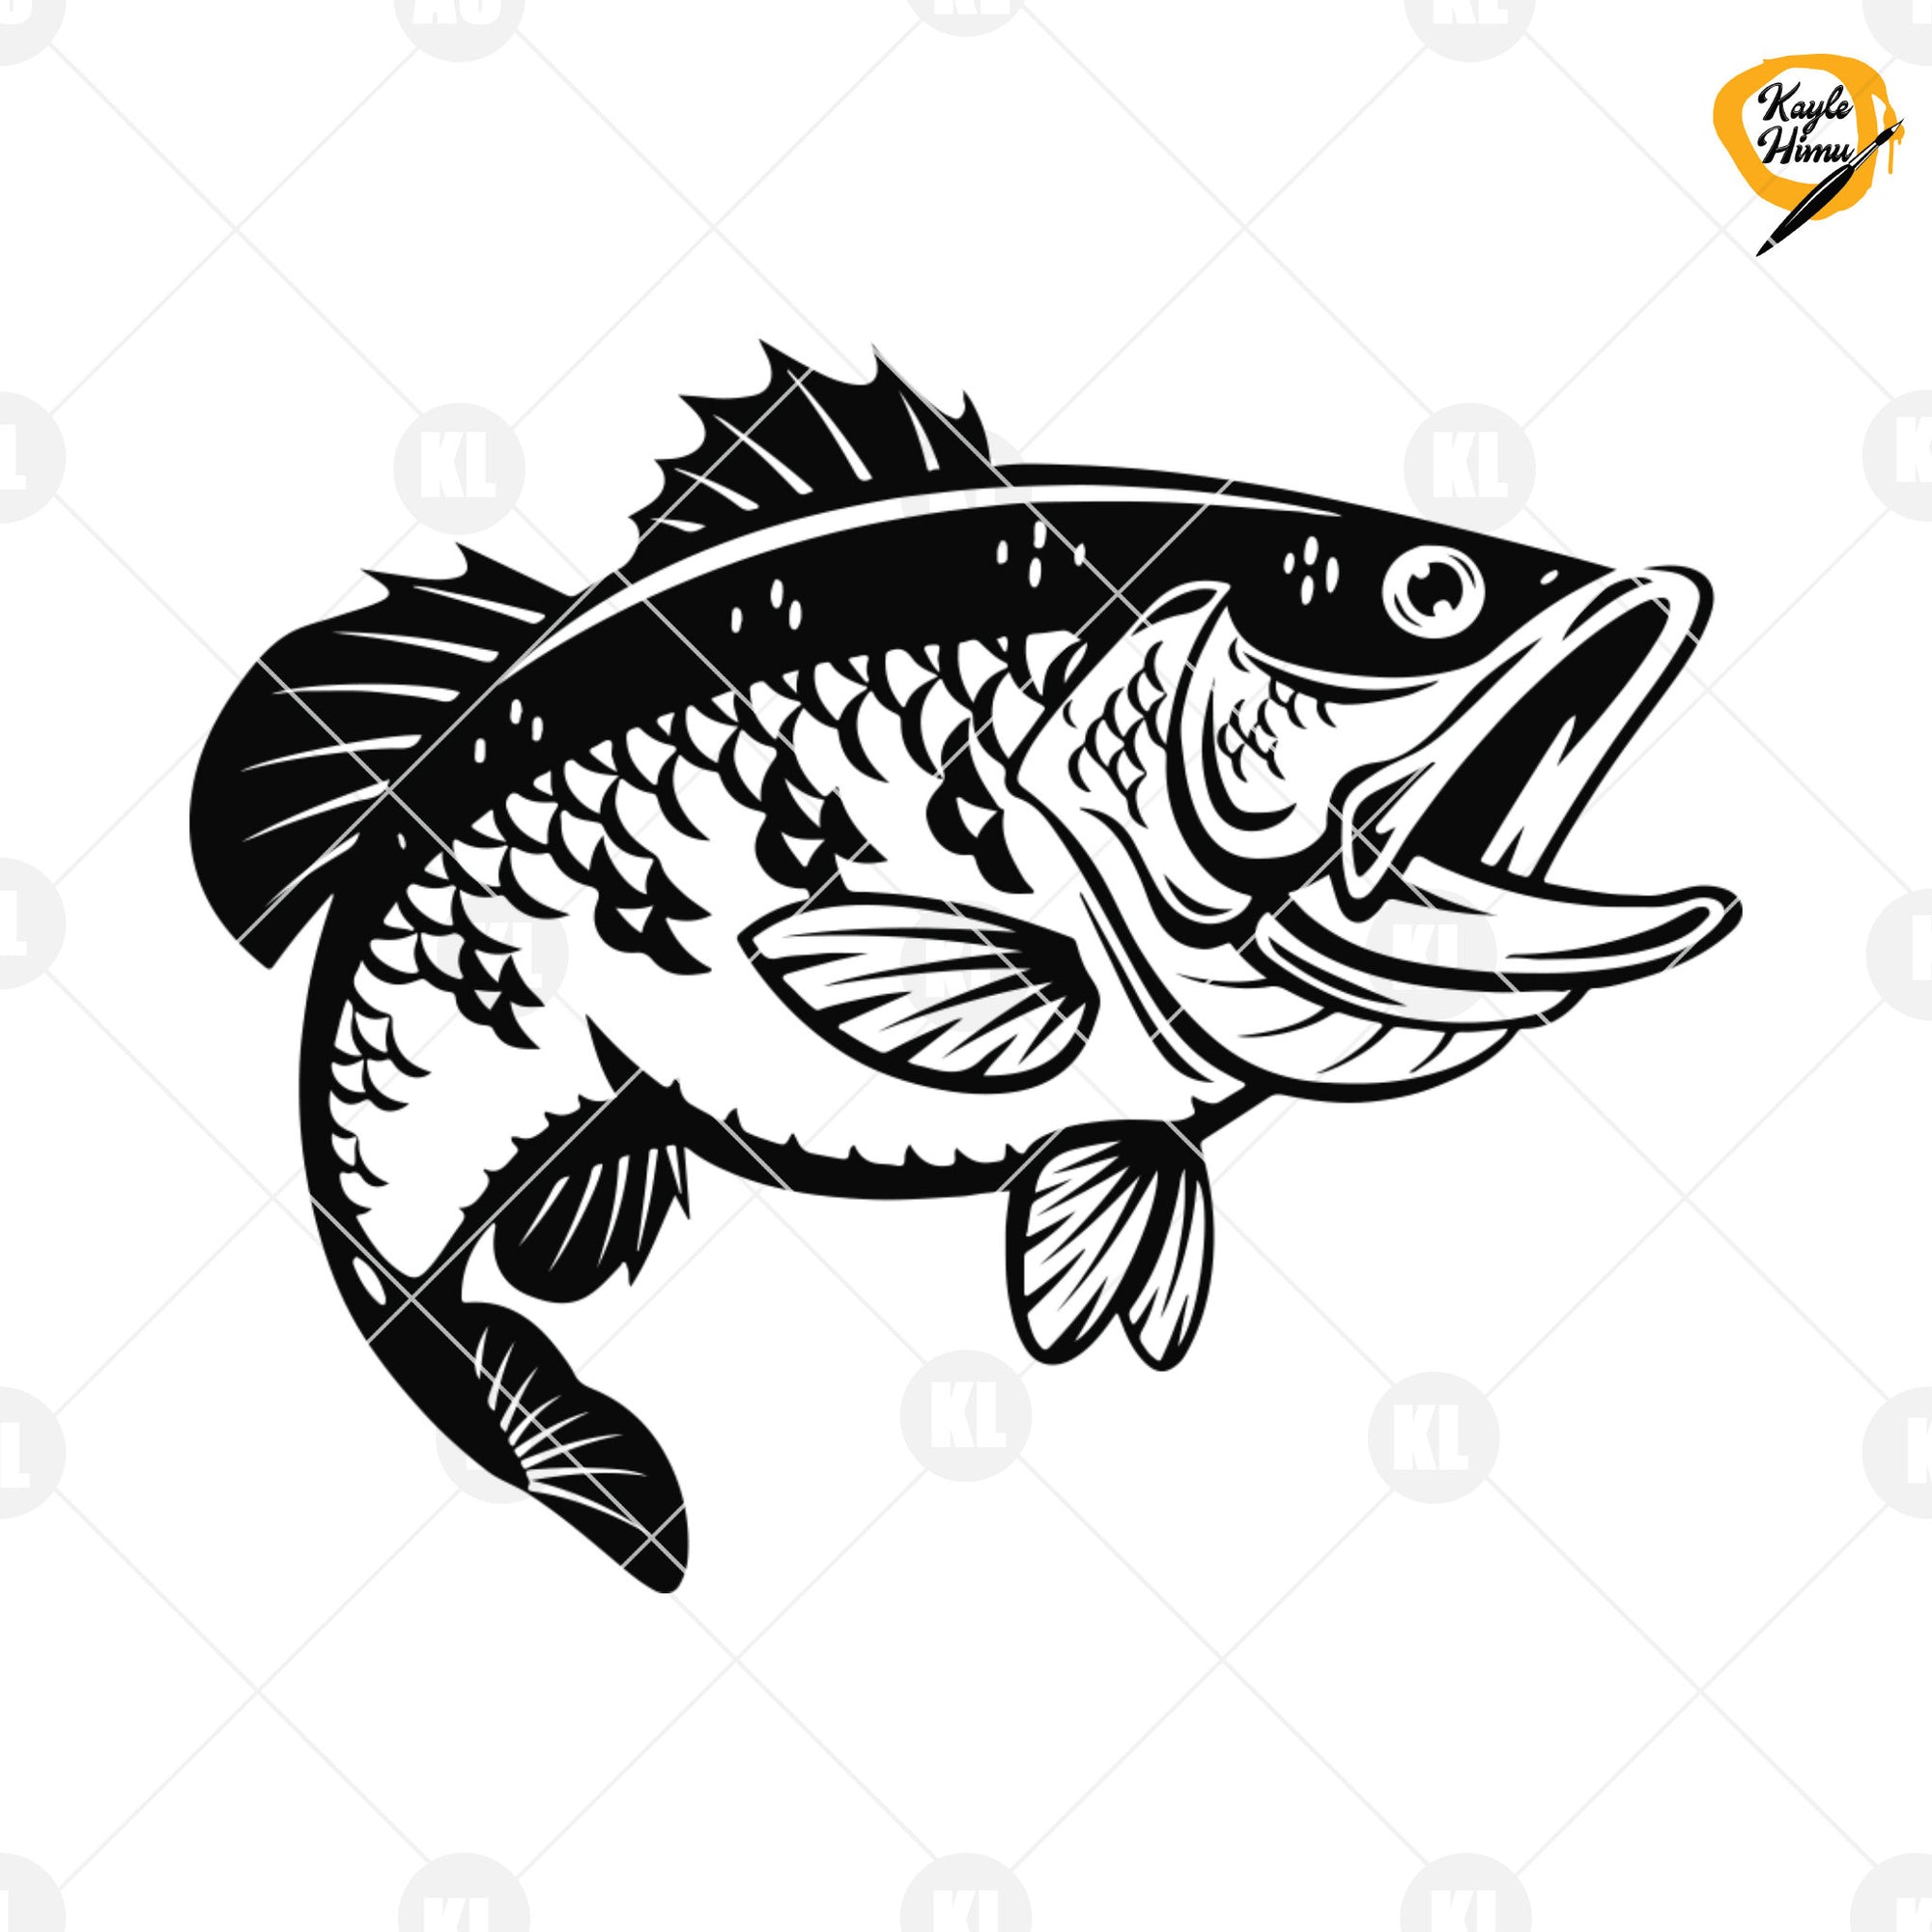 Fish Hook SVG - Fish Hook Cut File - Fish Hook PNG - Fish Hook DXF -  Cutting File - Fishhook Clip Art - Fishing Hook svg - Digital Download